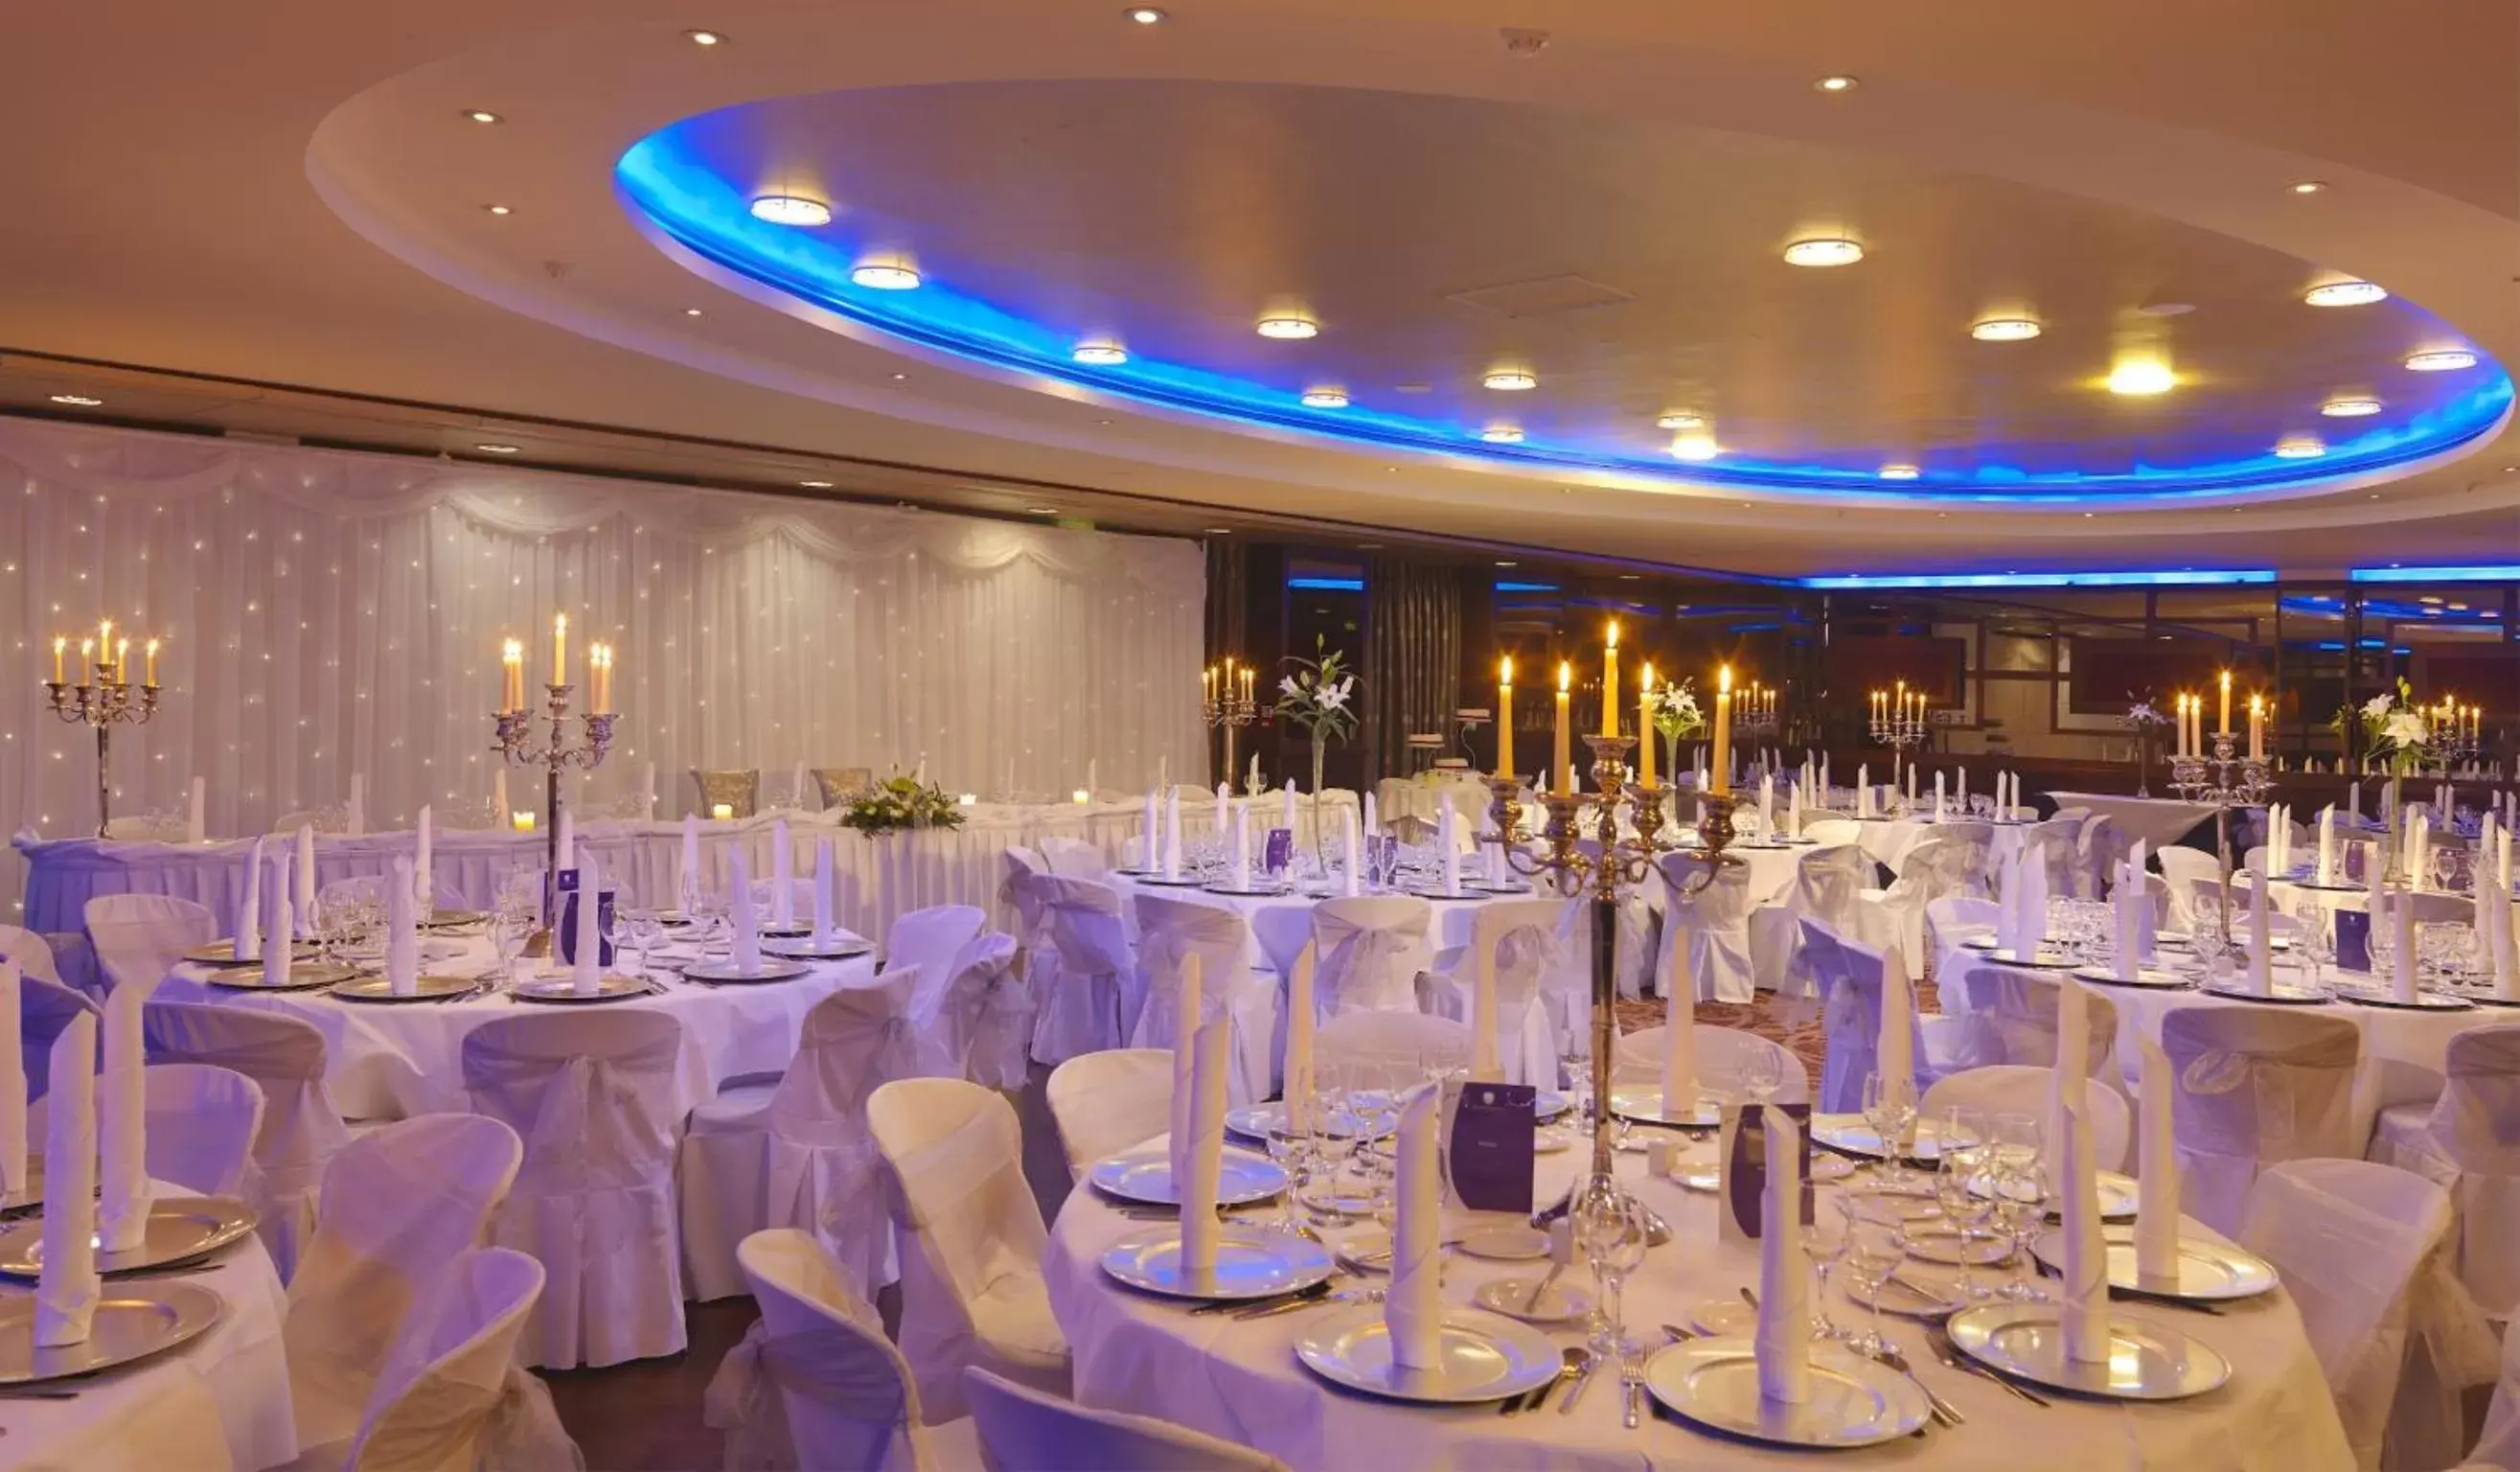 Banquet/Function facilities, Banquet Facilities in Kilkenny Ormonde Hotel